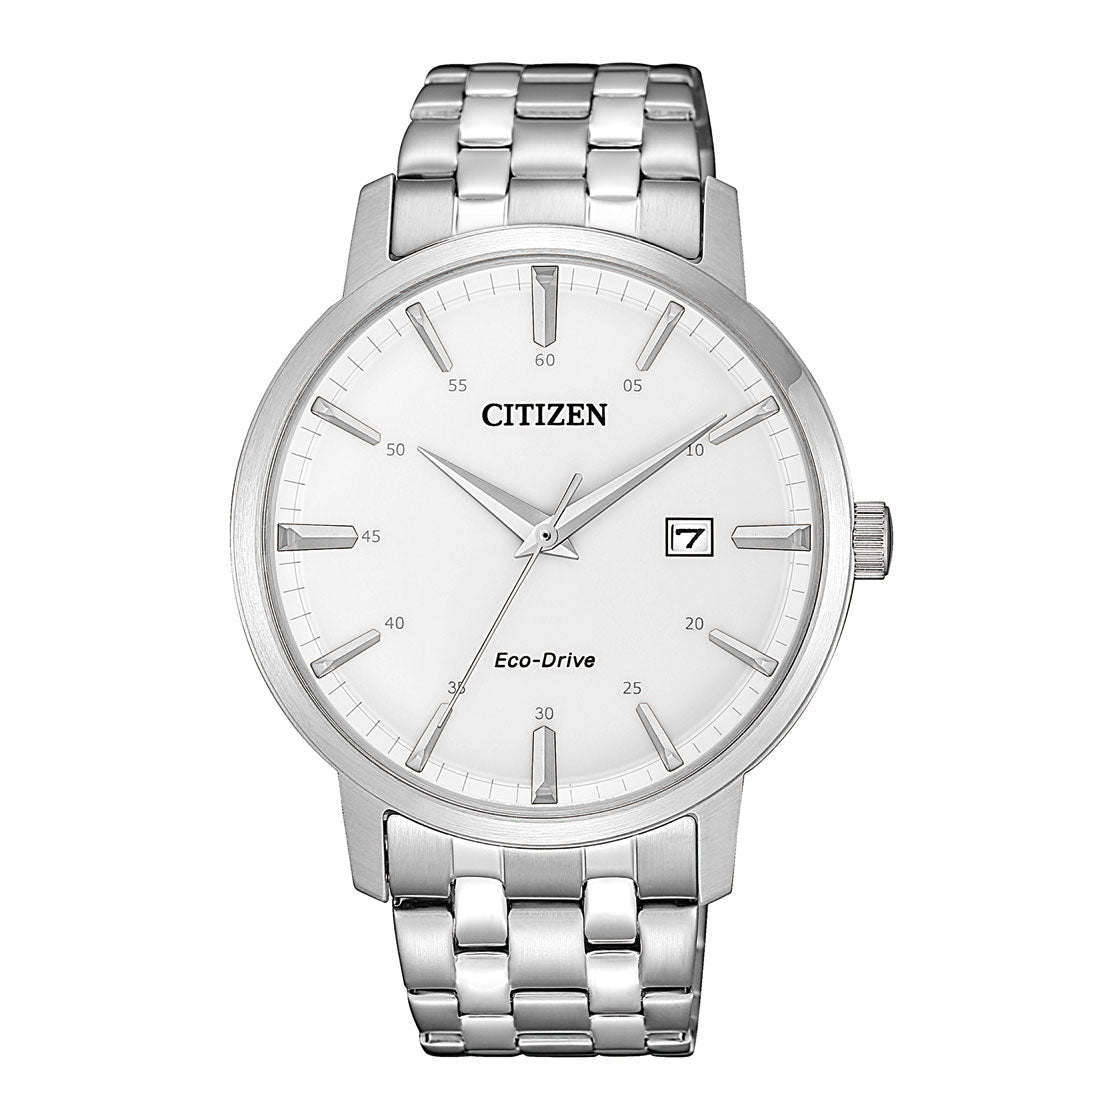 Citizen Men's Optical Powered Movement Silver Dial Watch - BM7460-88H